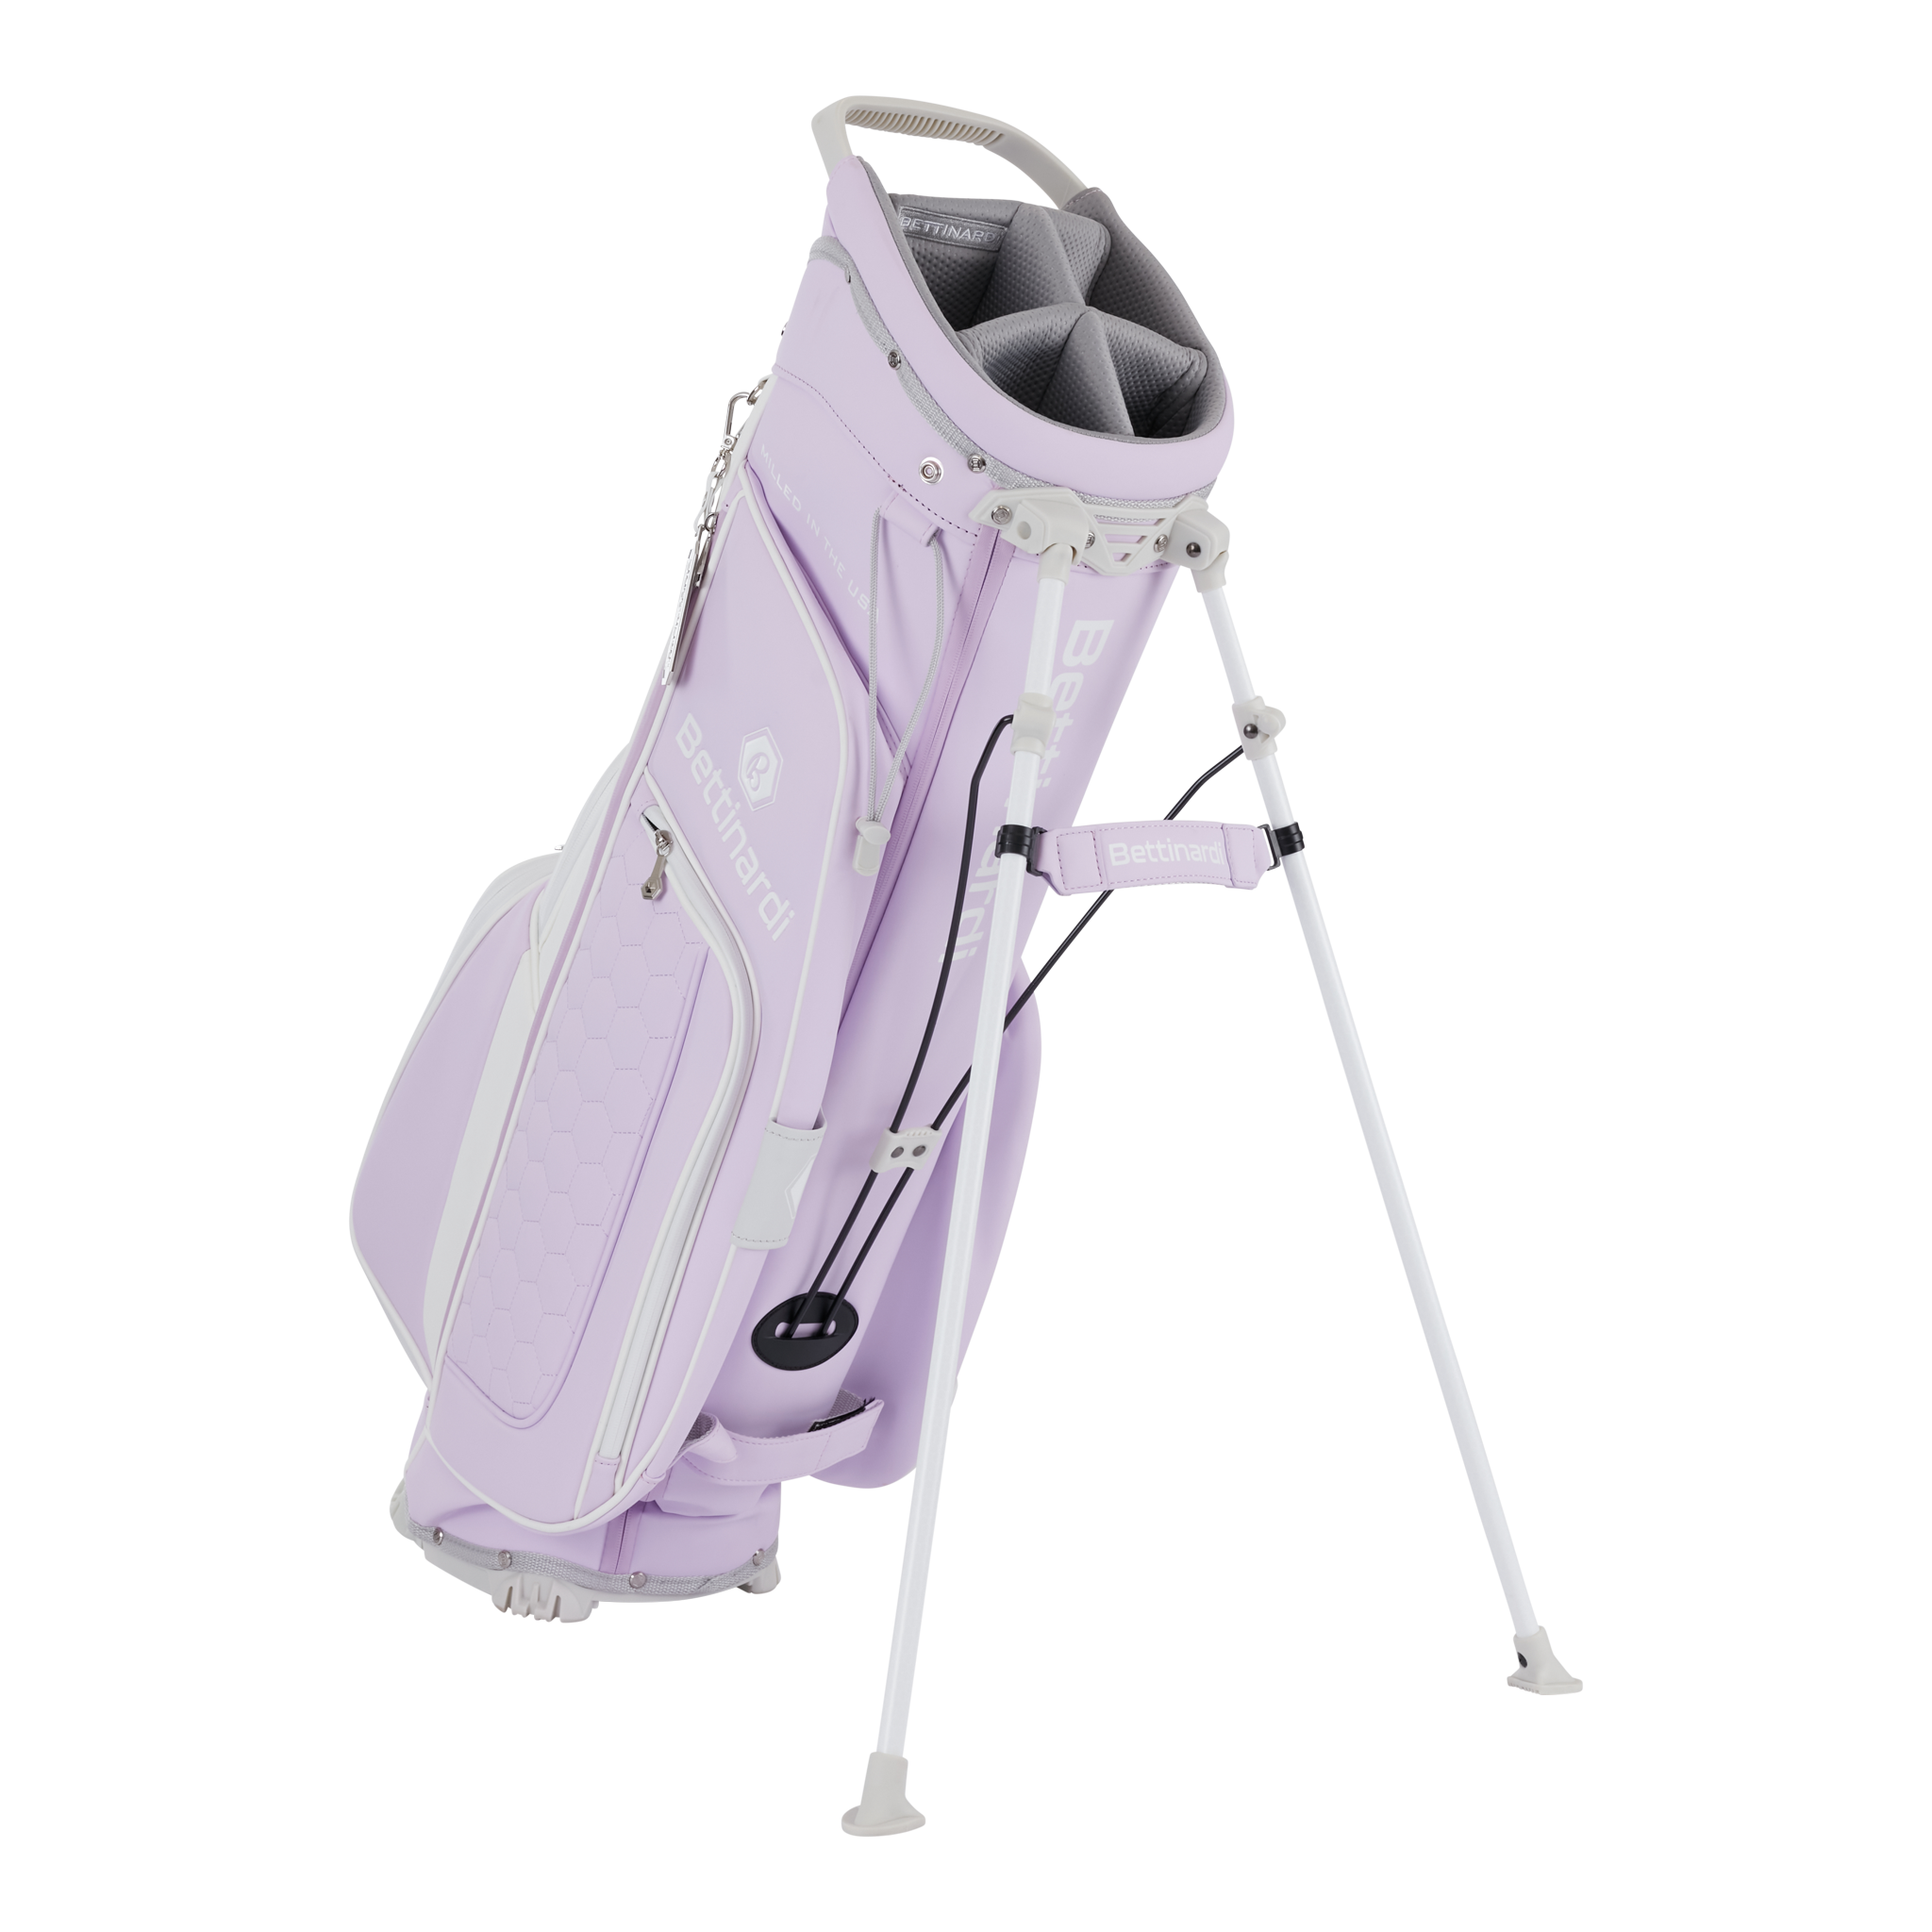 Lavender Haze Bettinardi Golf Women’s Stand Bag - standing